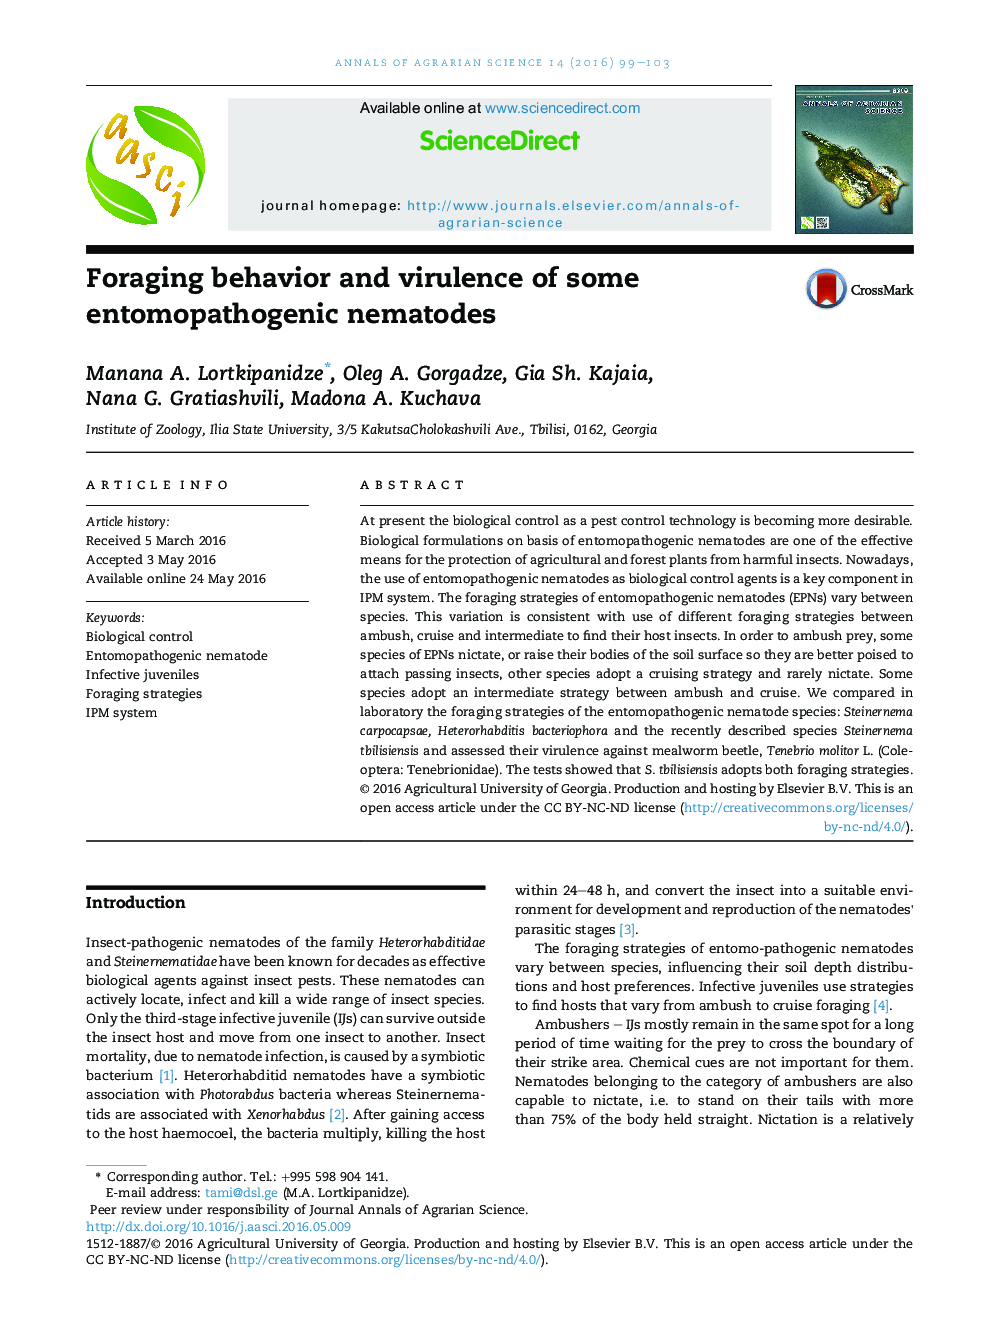 Foraging behavior and virulence of some entomopathogenic nematodes 